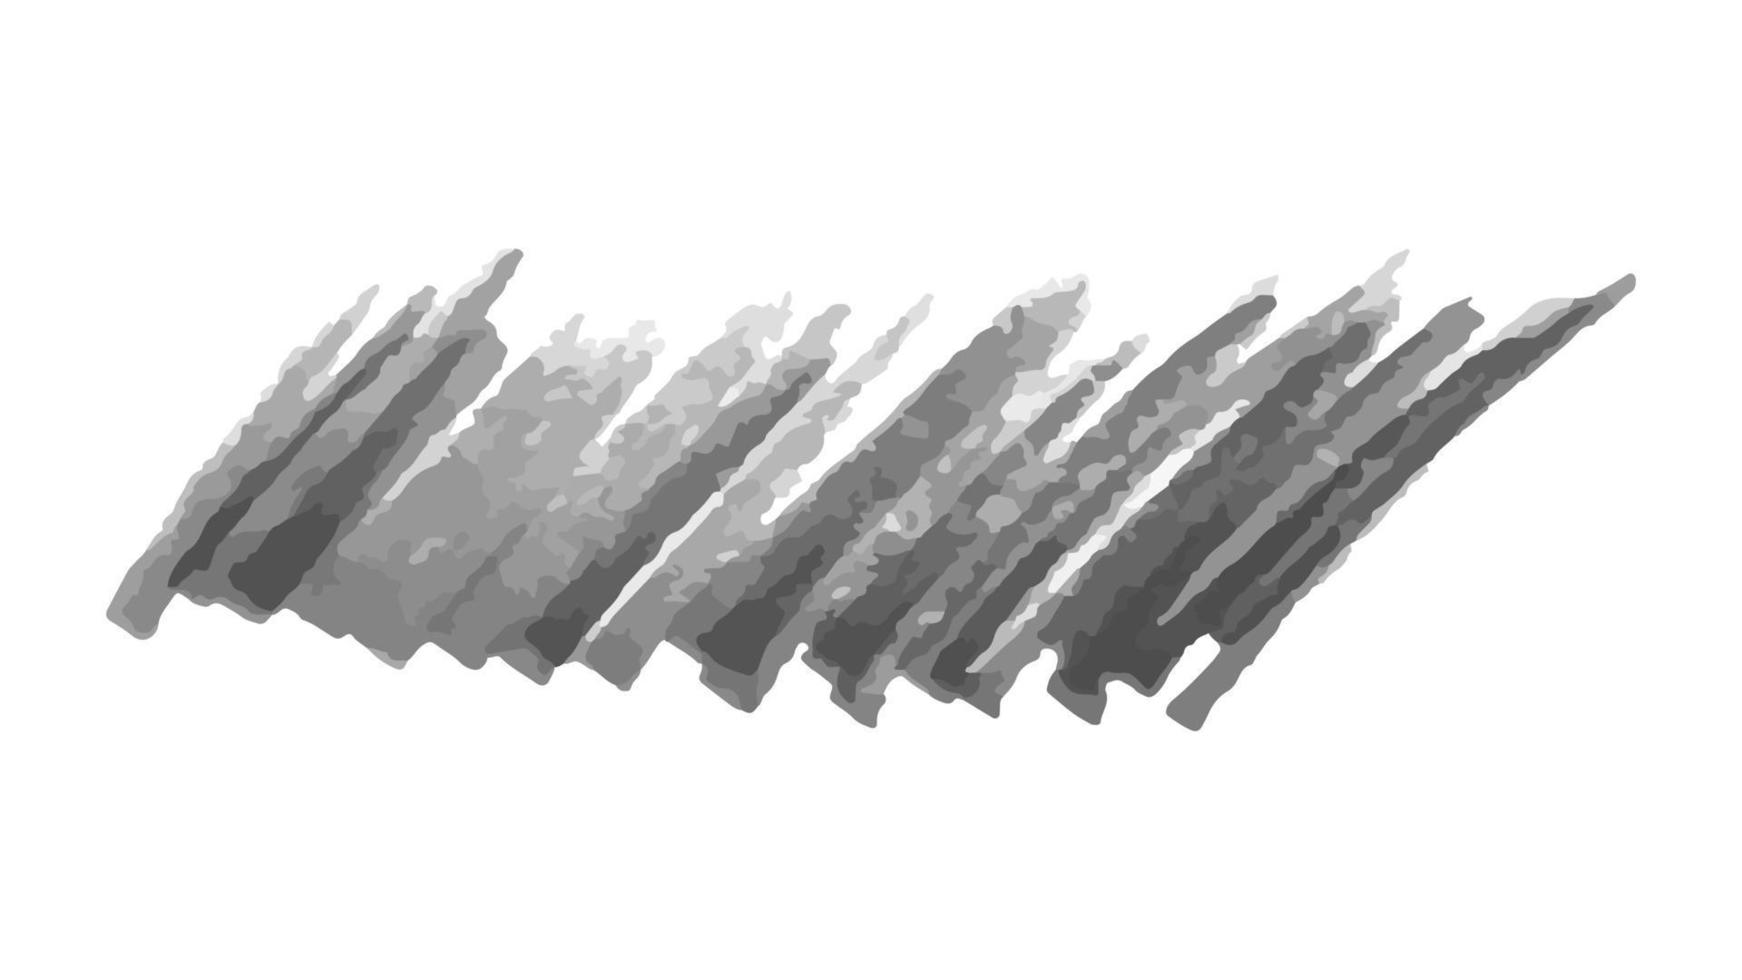 mit einem schwarzen Filzstift kritzeln. Gekritzel im Doodle-Stil. schwarze handgezeichnete Designelemente auf weißem Hintergrund. Vektor-Illustration vektor